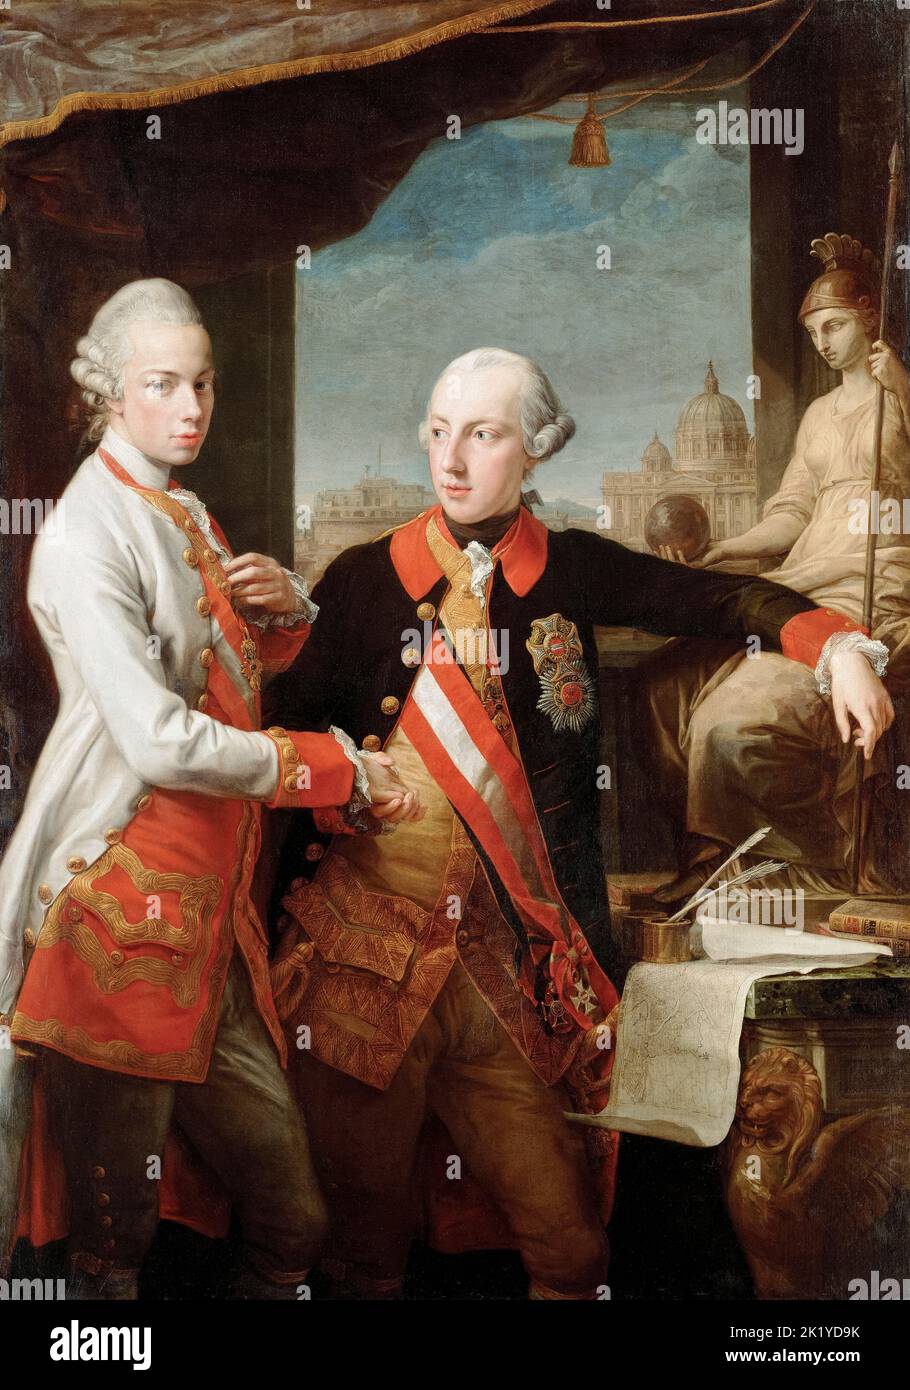 José II (1741-1790), Sacro Emperador Romano (1765-1790), con su hermano Pedro Leopoldo (1747-1792), Gran Duque de Toscana (1765-1790), más tarde Leopoldo II, Sacro Emperador Romano (1790-1792), retrato en óleo sobre lienzo de Pompeo Batoni, 1769 Foto de stock